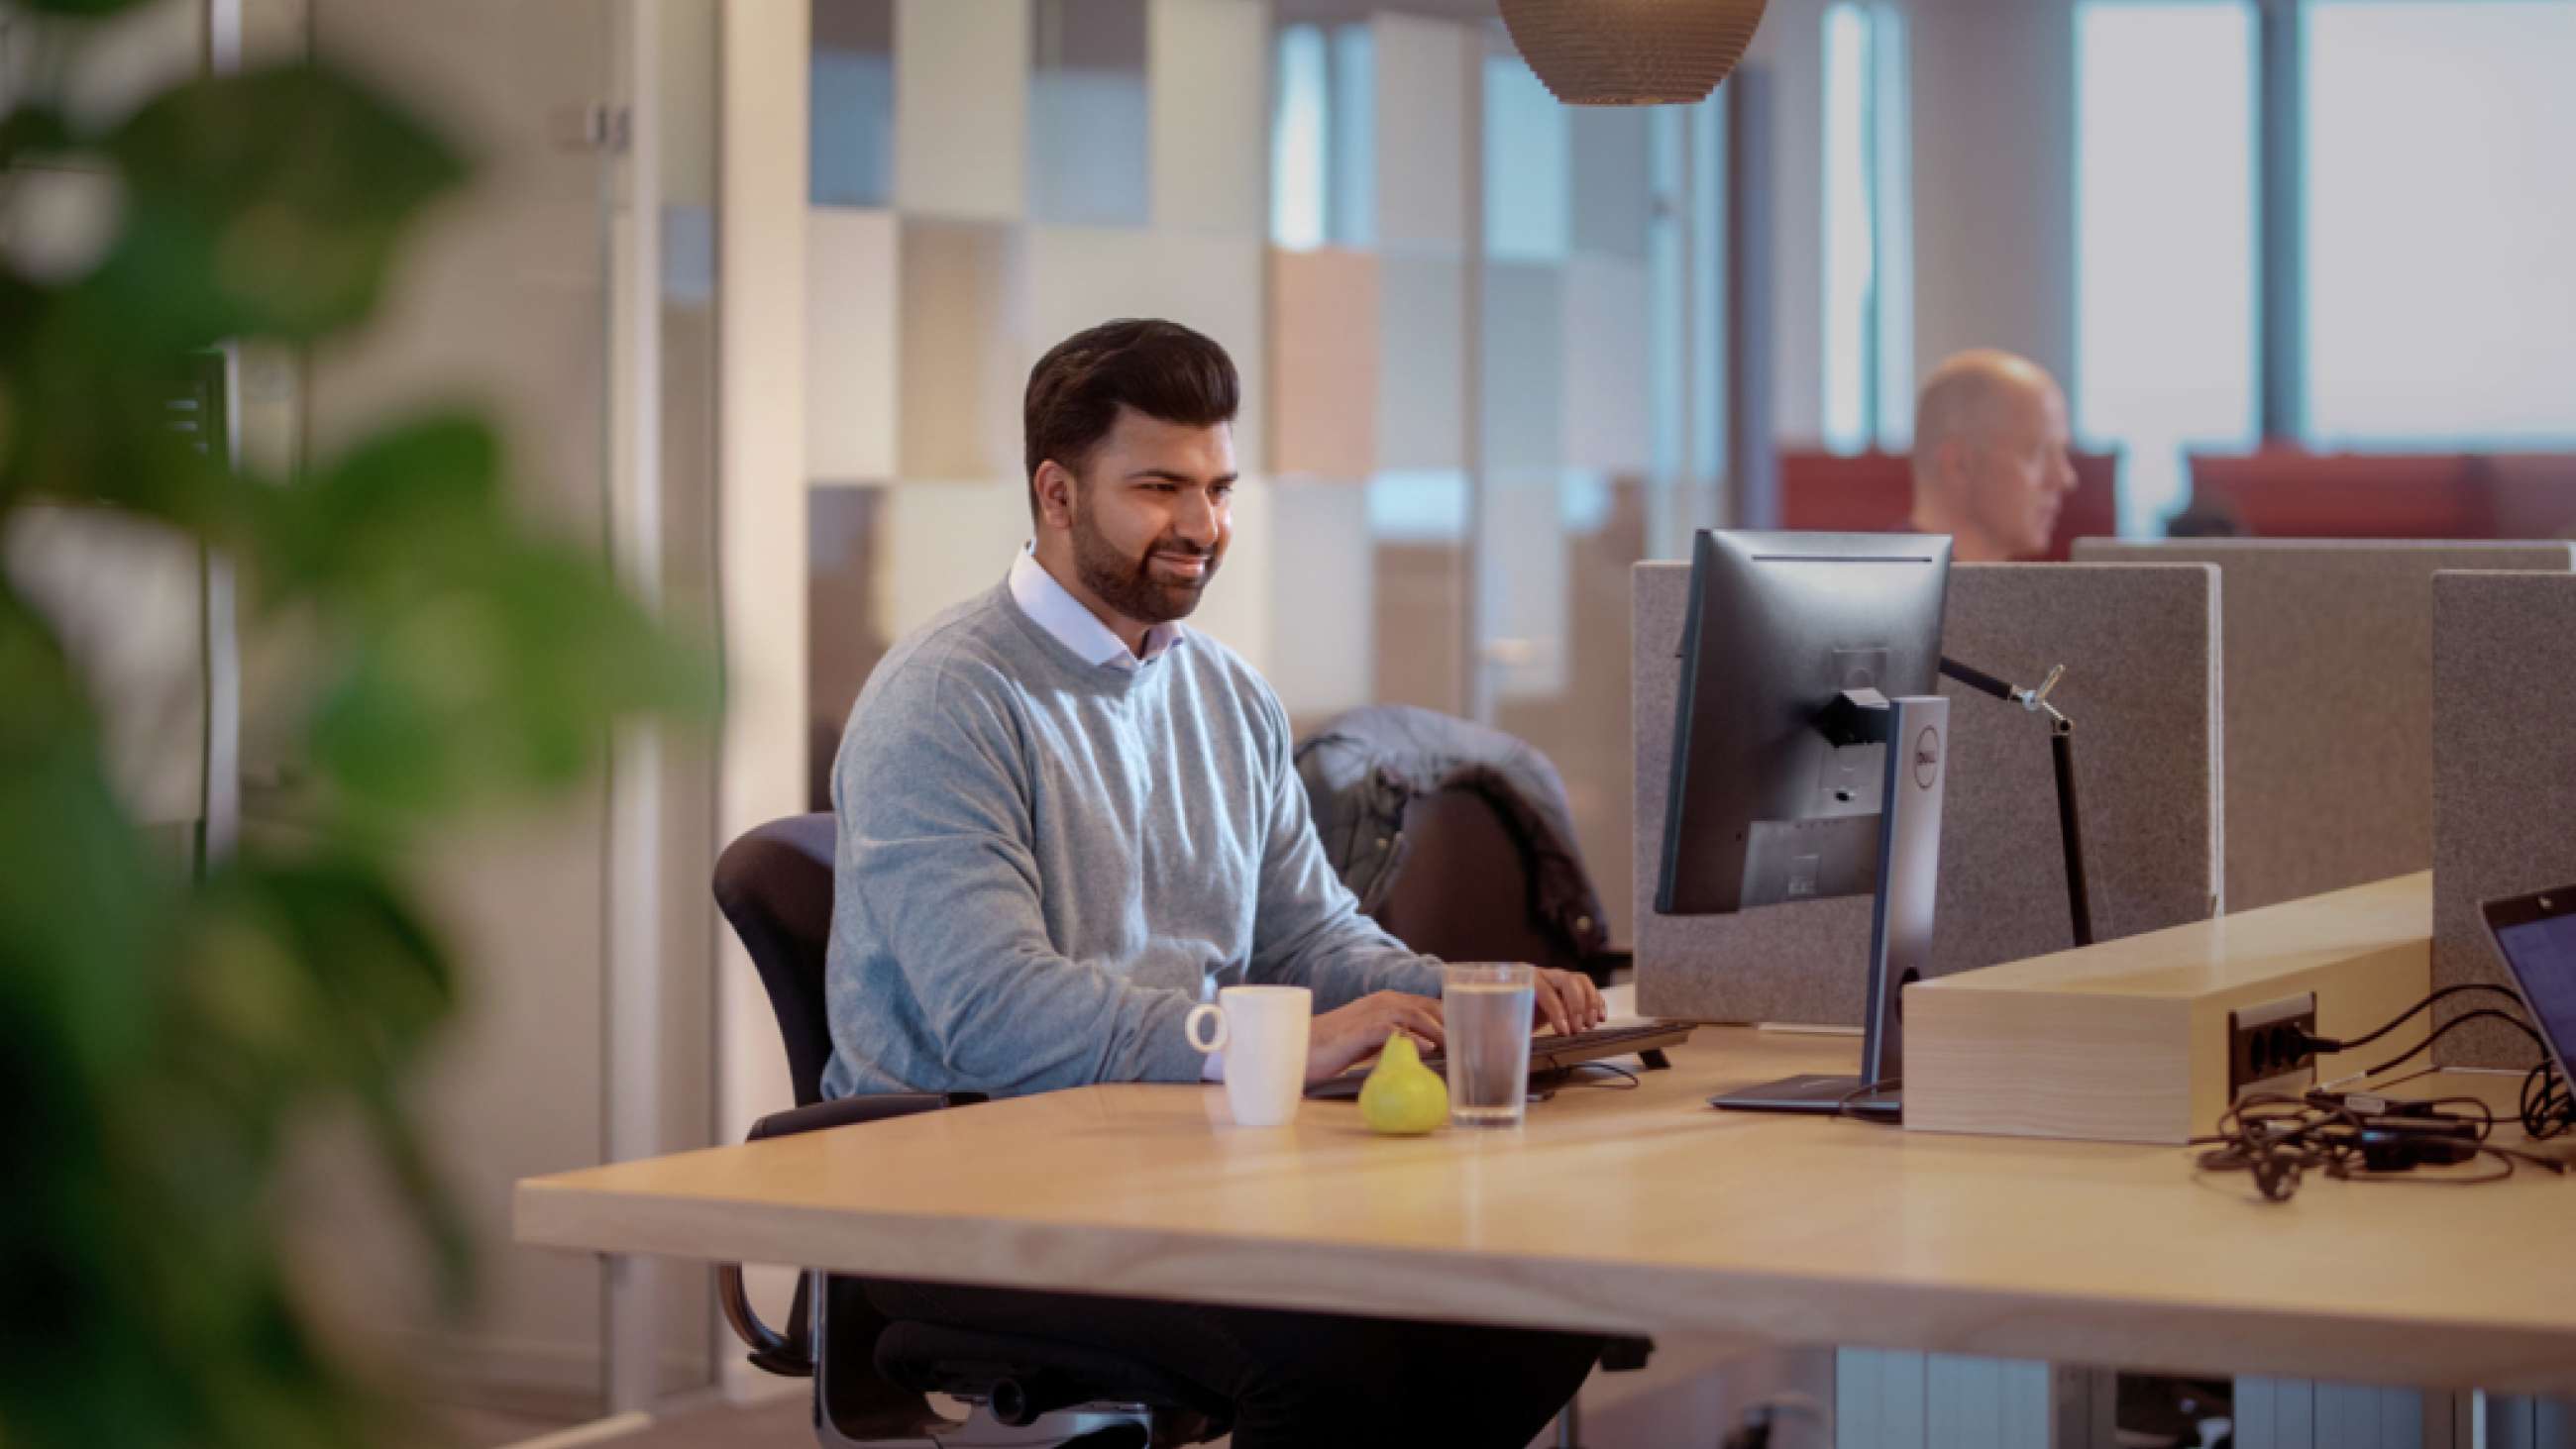 Mann sitter foran PC på kontor med glassvegger bak seg.